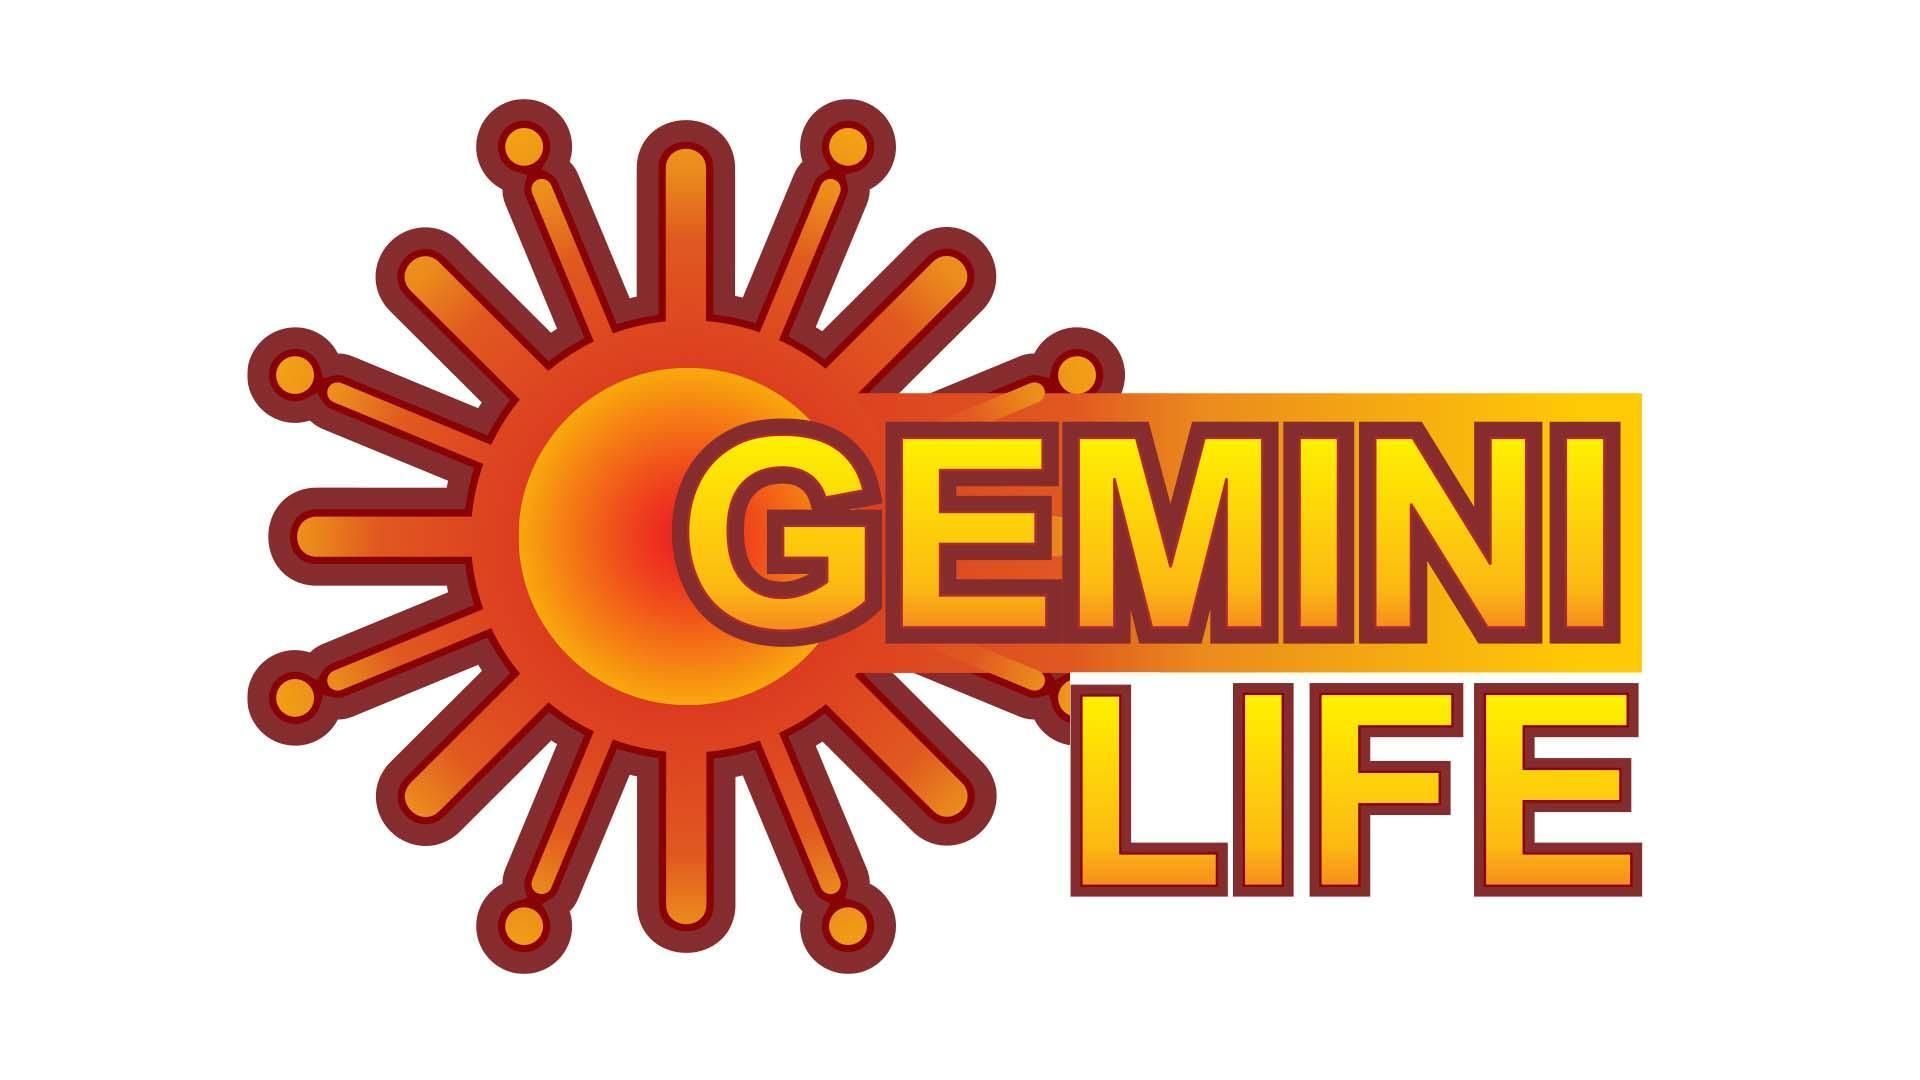 Gemini Life